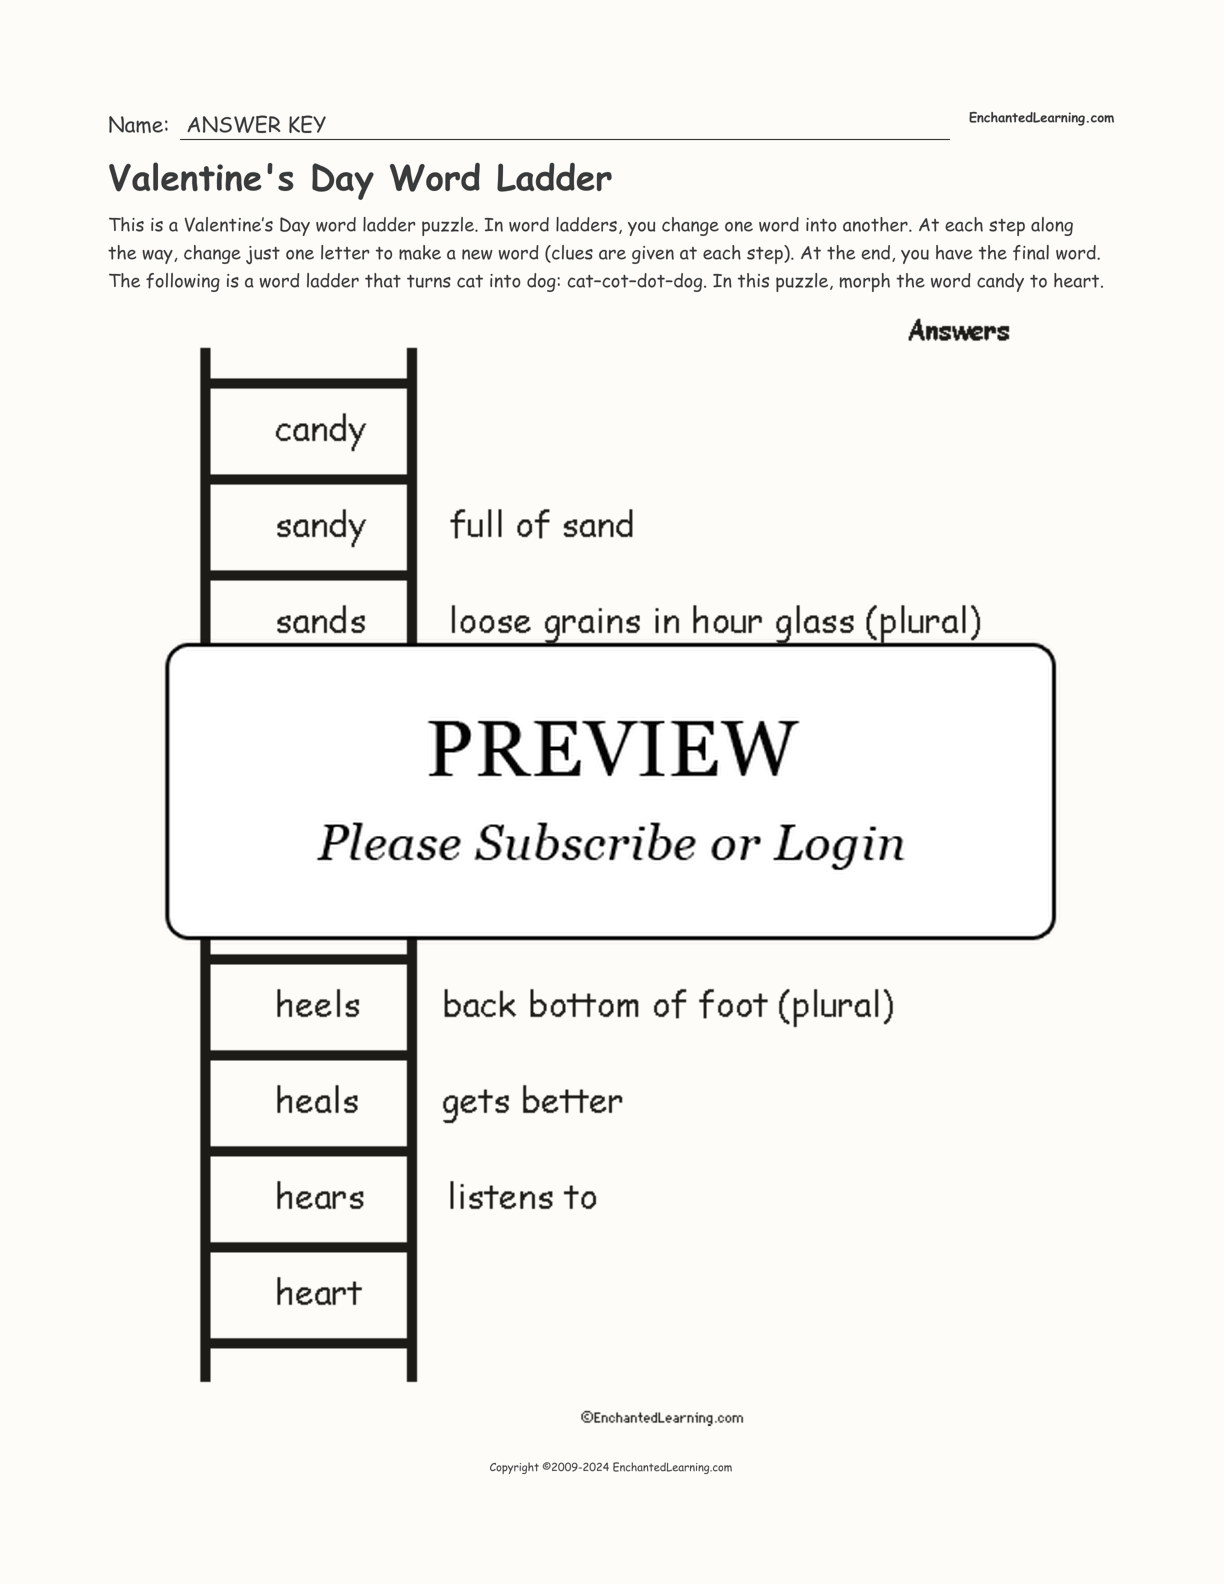 Valentine's Day Word Ladder interactive worksheet page 2